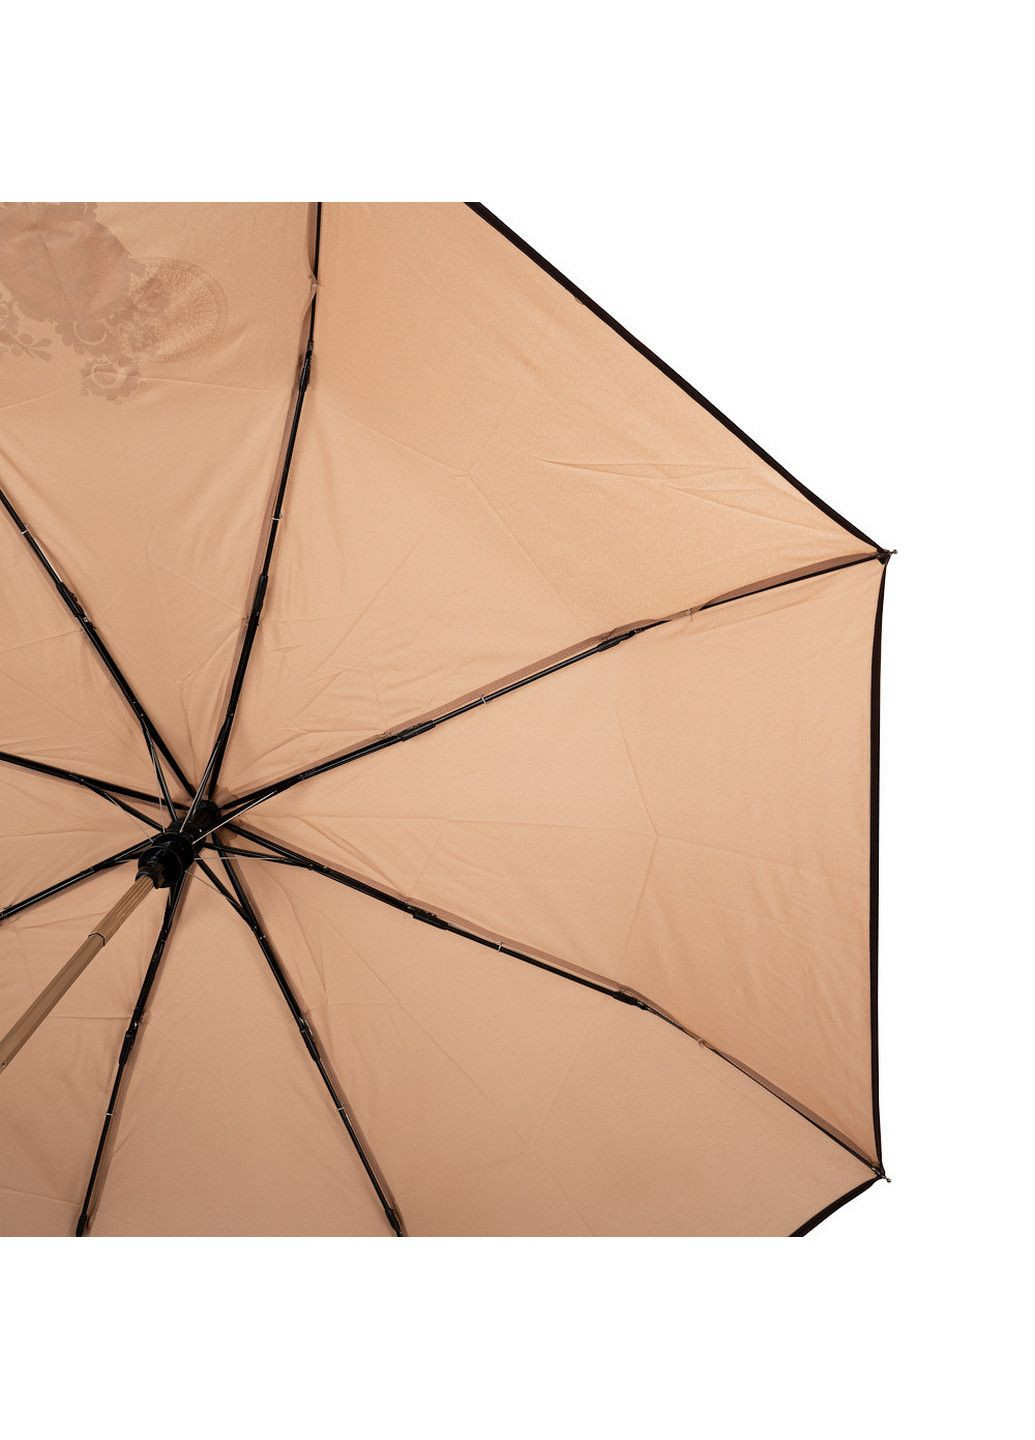 Складной зонт полуавтомат 100 см Art rain (197766724)